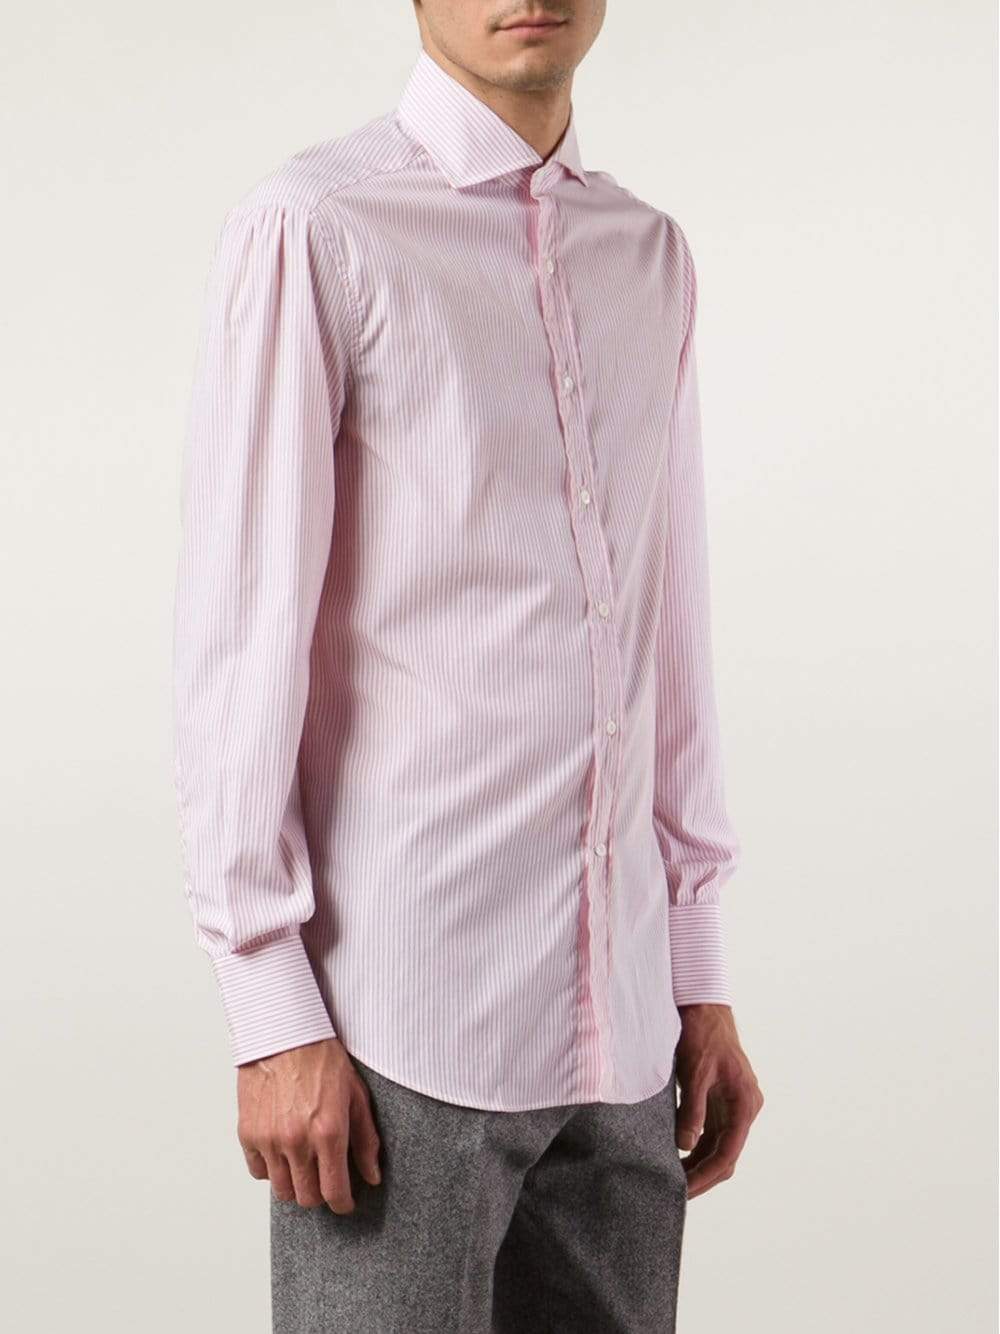 BRUNELLO CUCINELLI-Striped Spread Collar Shirt-